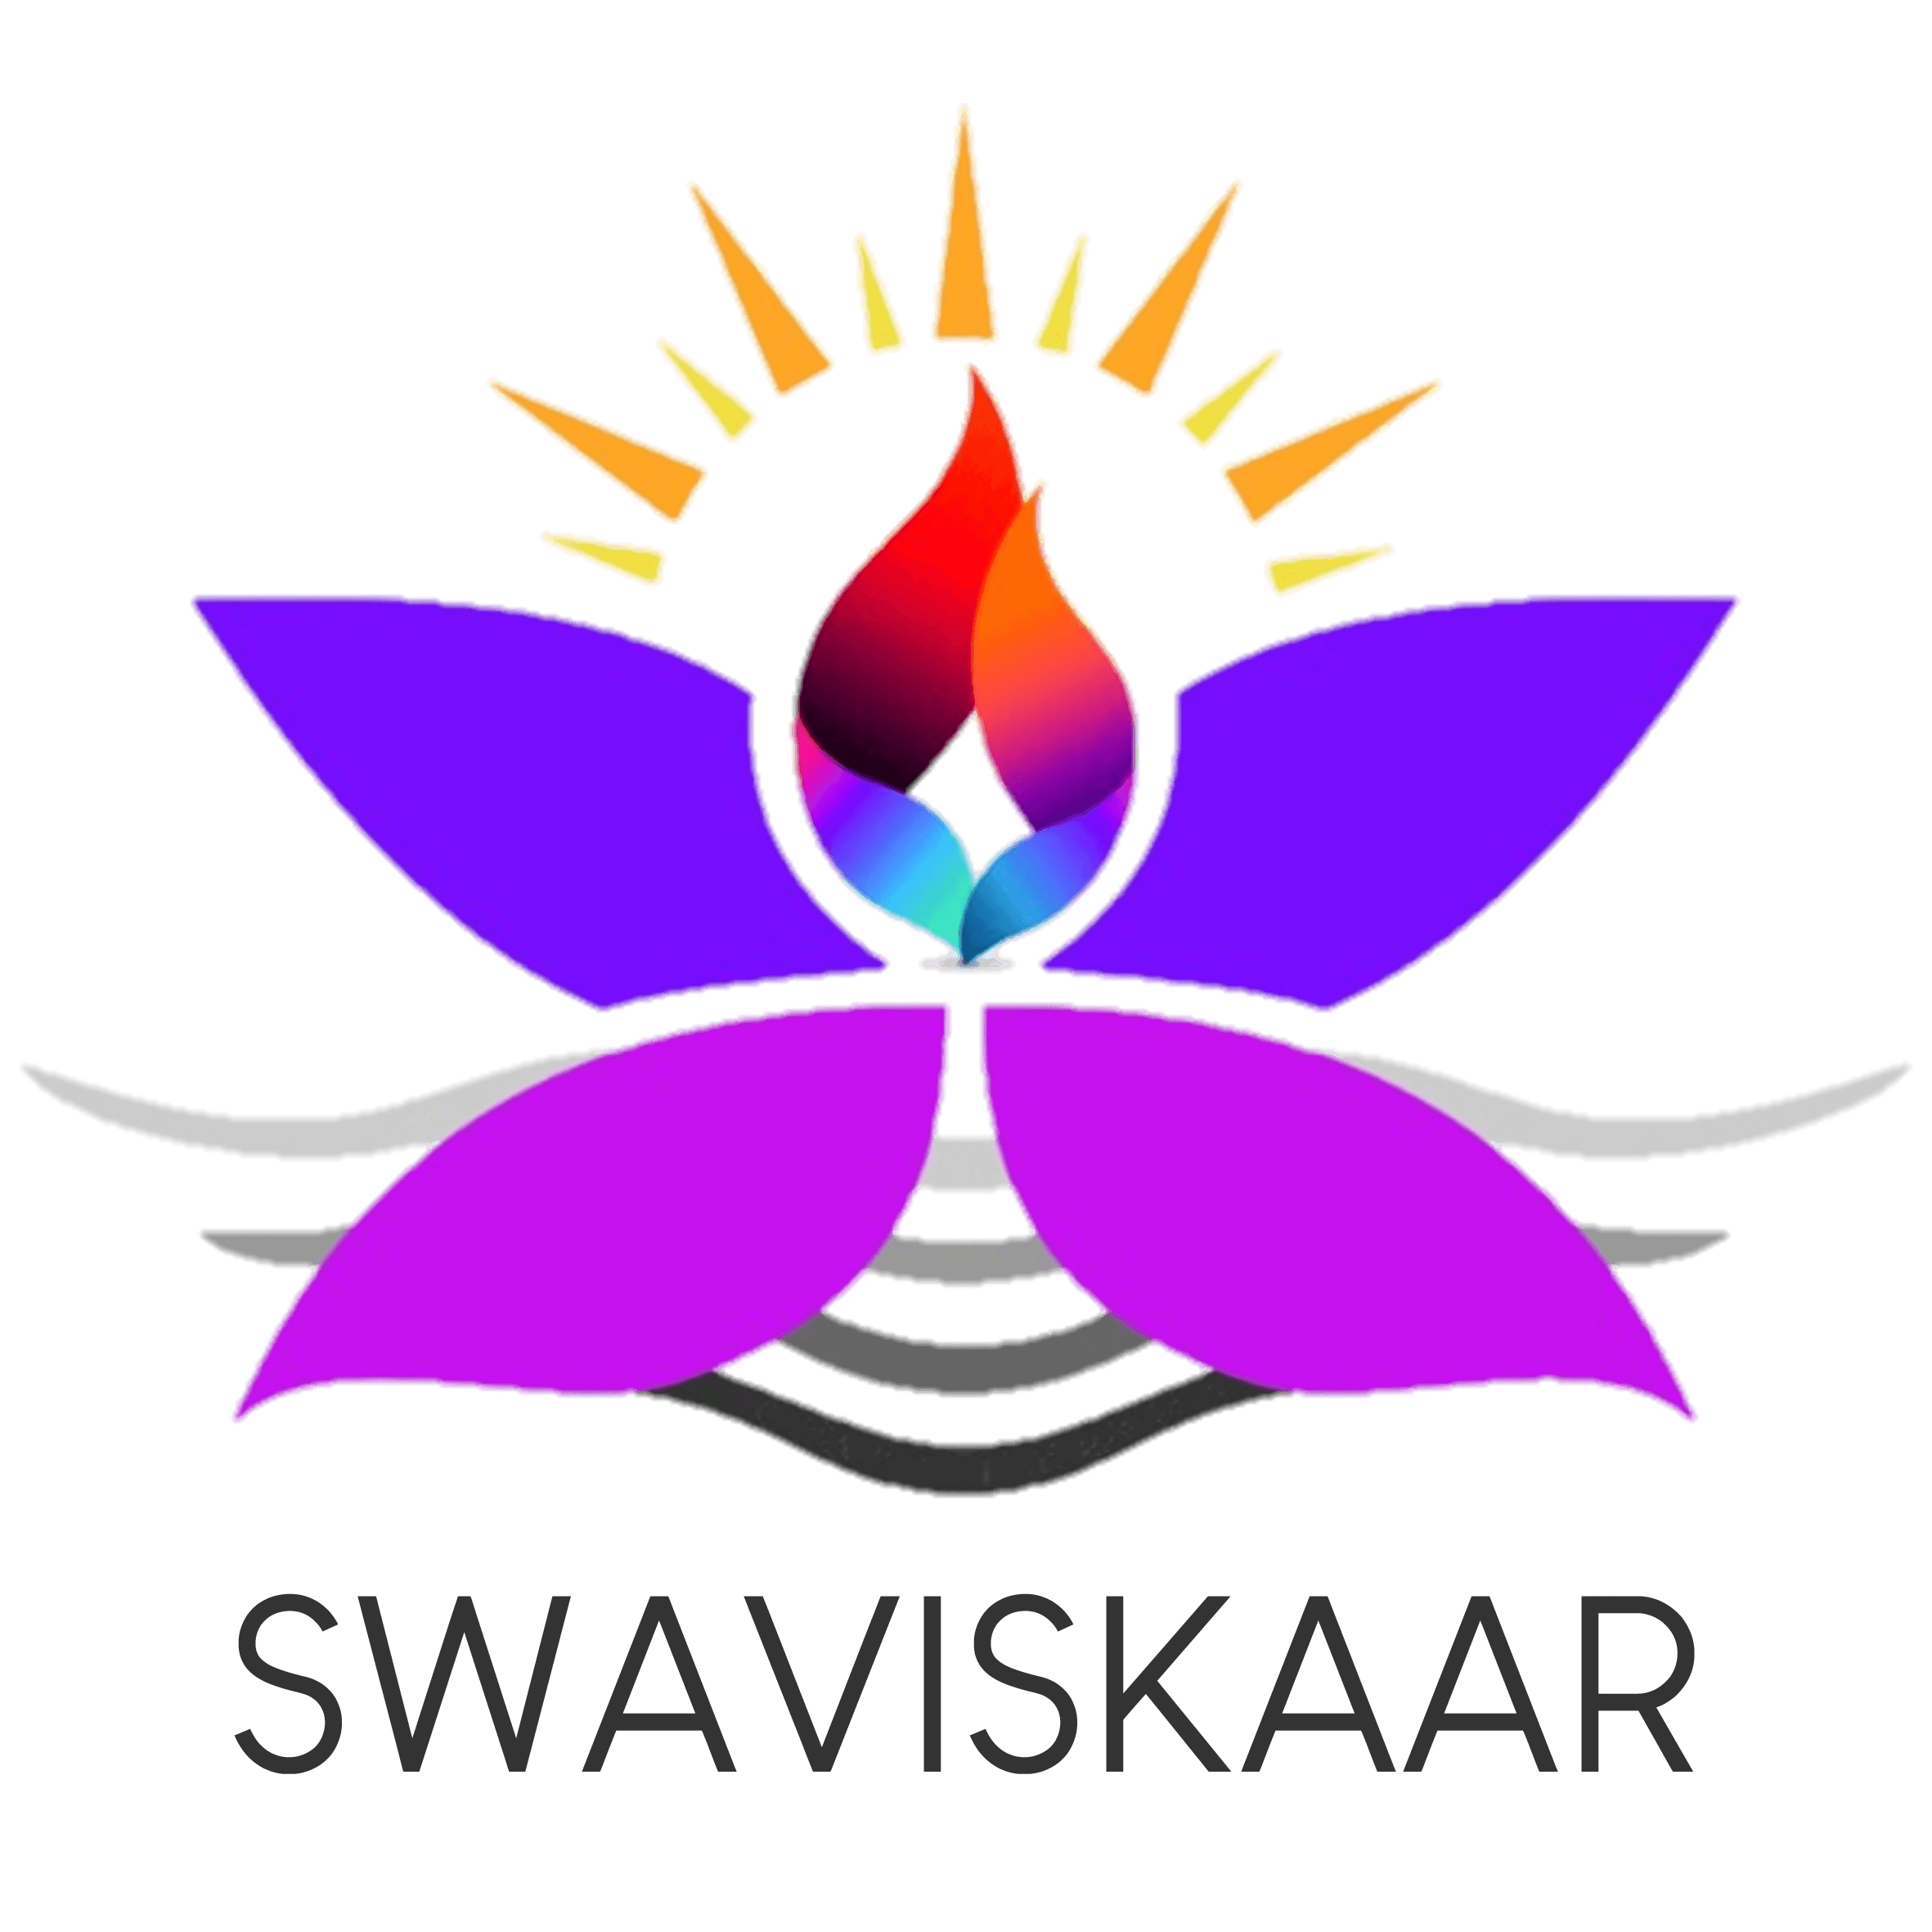 Swaviskaar – The Arts SIG